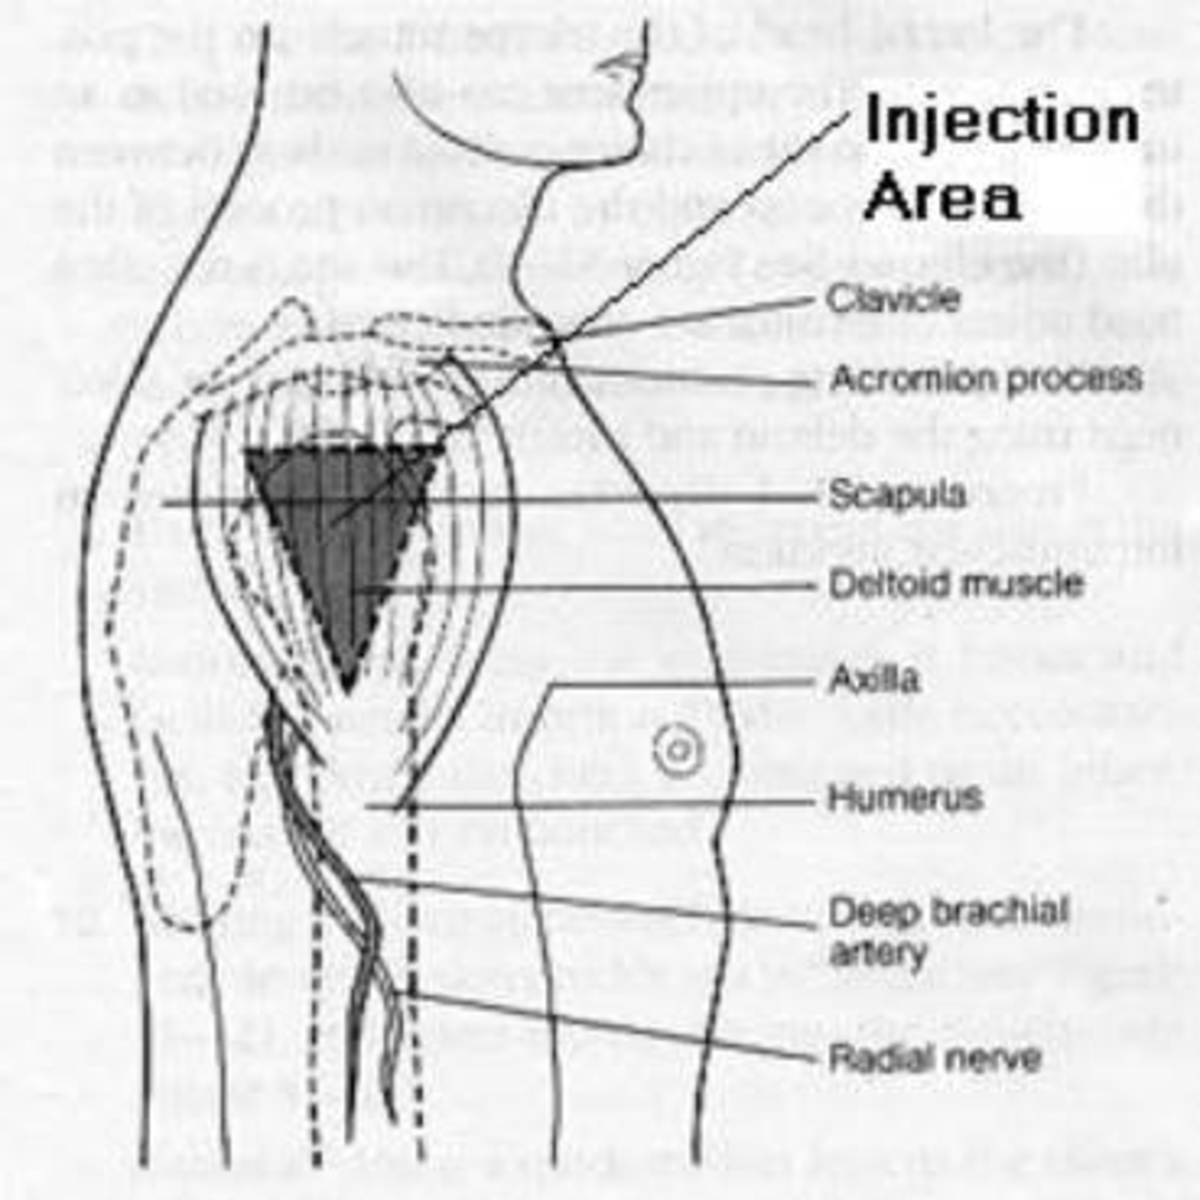 Deltoid Intramuscular Injection